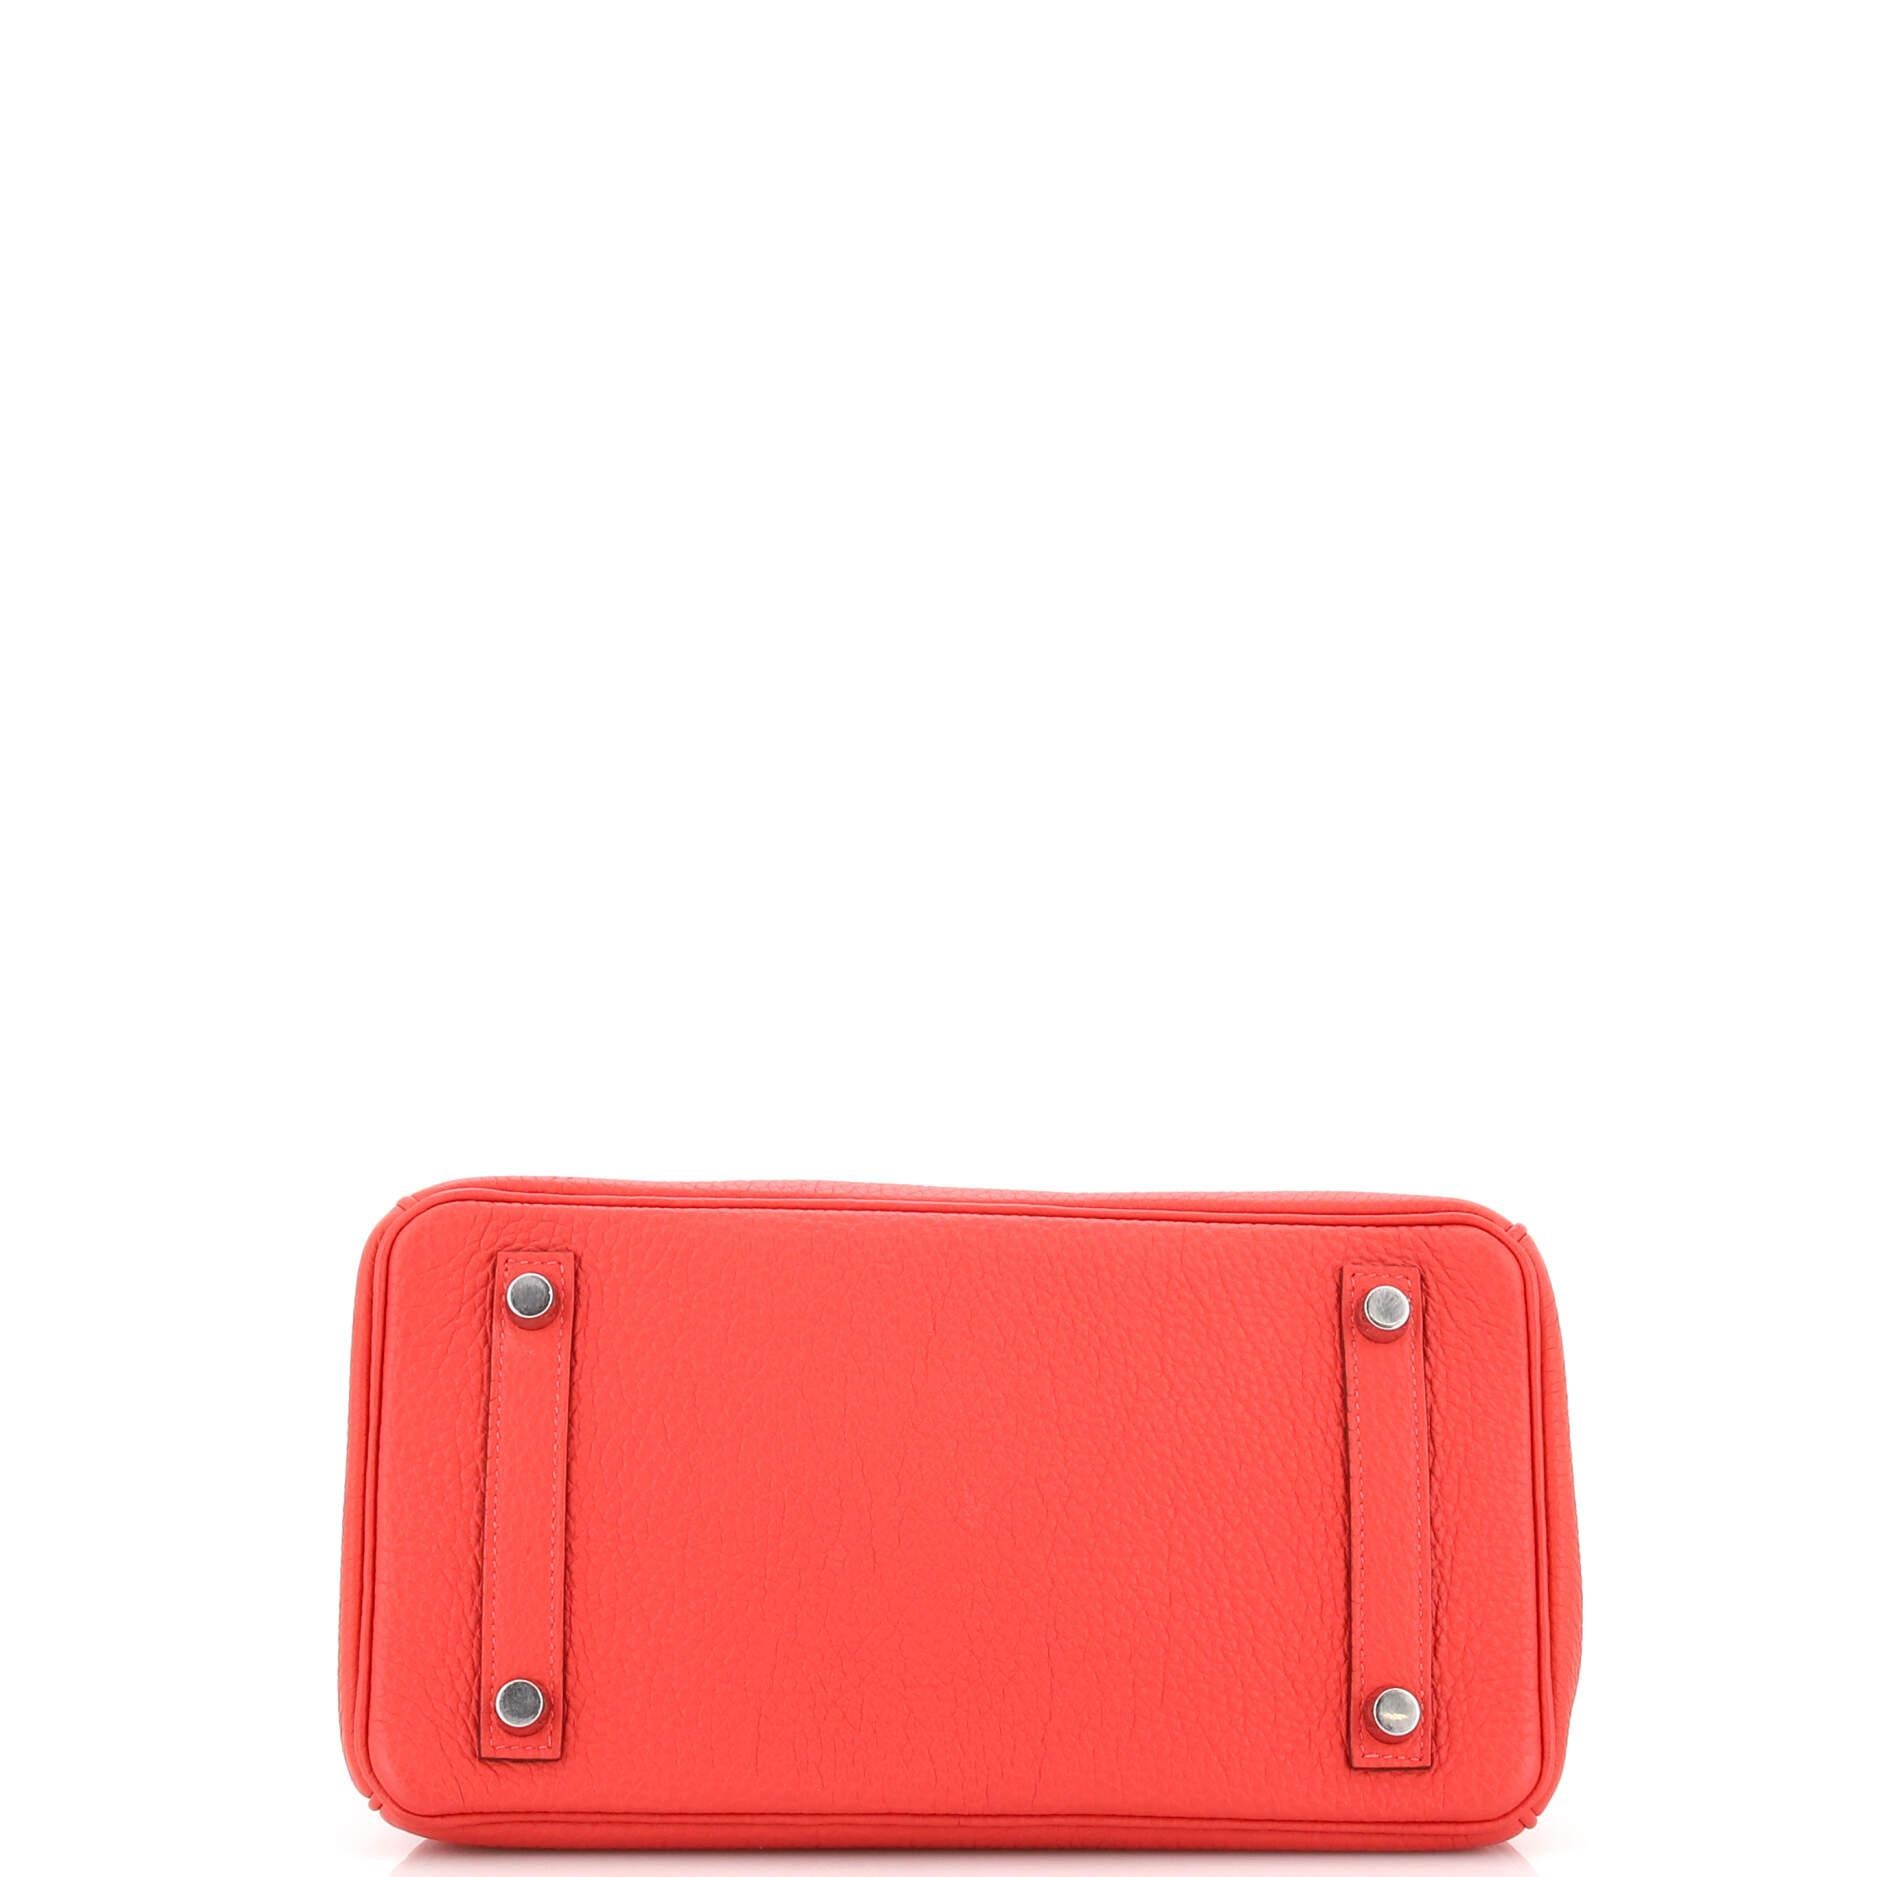 Hermes Birkin Handbag Rouge Pivoine Togo with Palladium Hardware 25 1